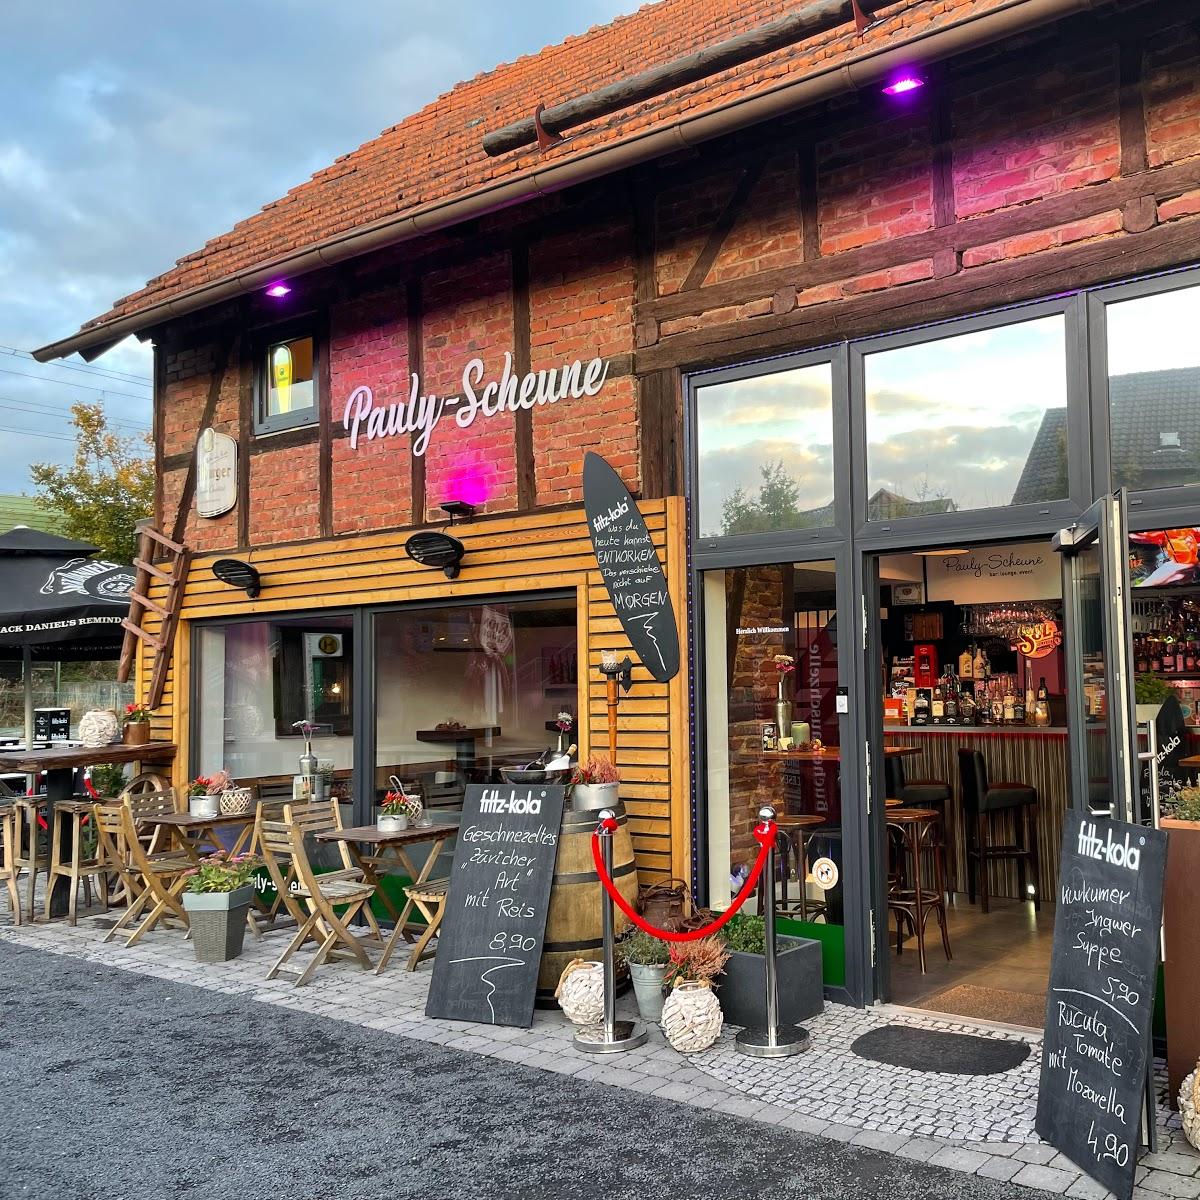 Restaurant "Pauly-Scheune Bar, Lounge, Music, Restaurant & Event Location in  - Sven Weyh" in Wildeck